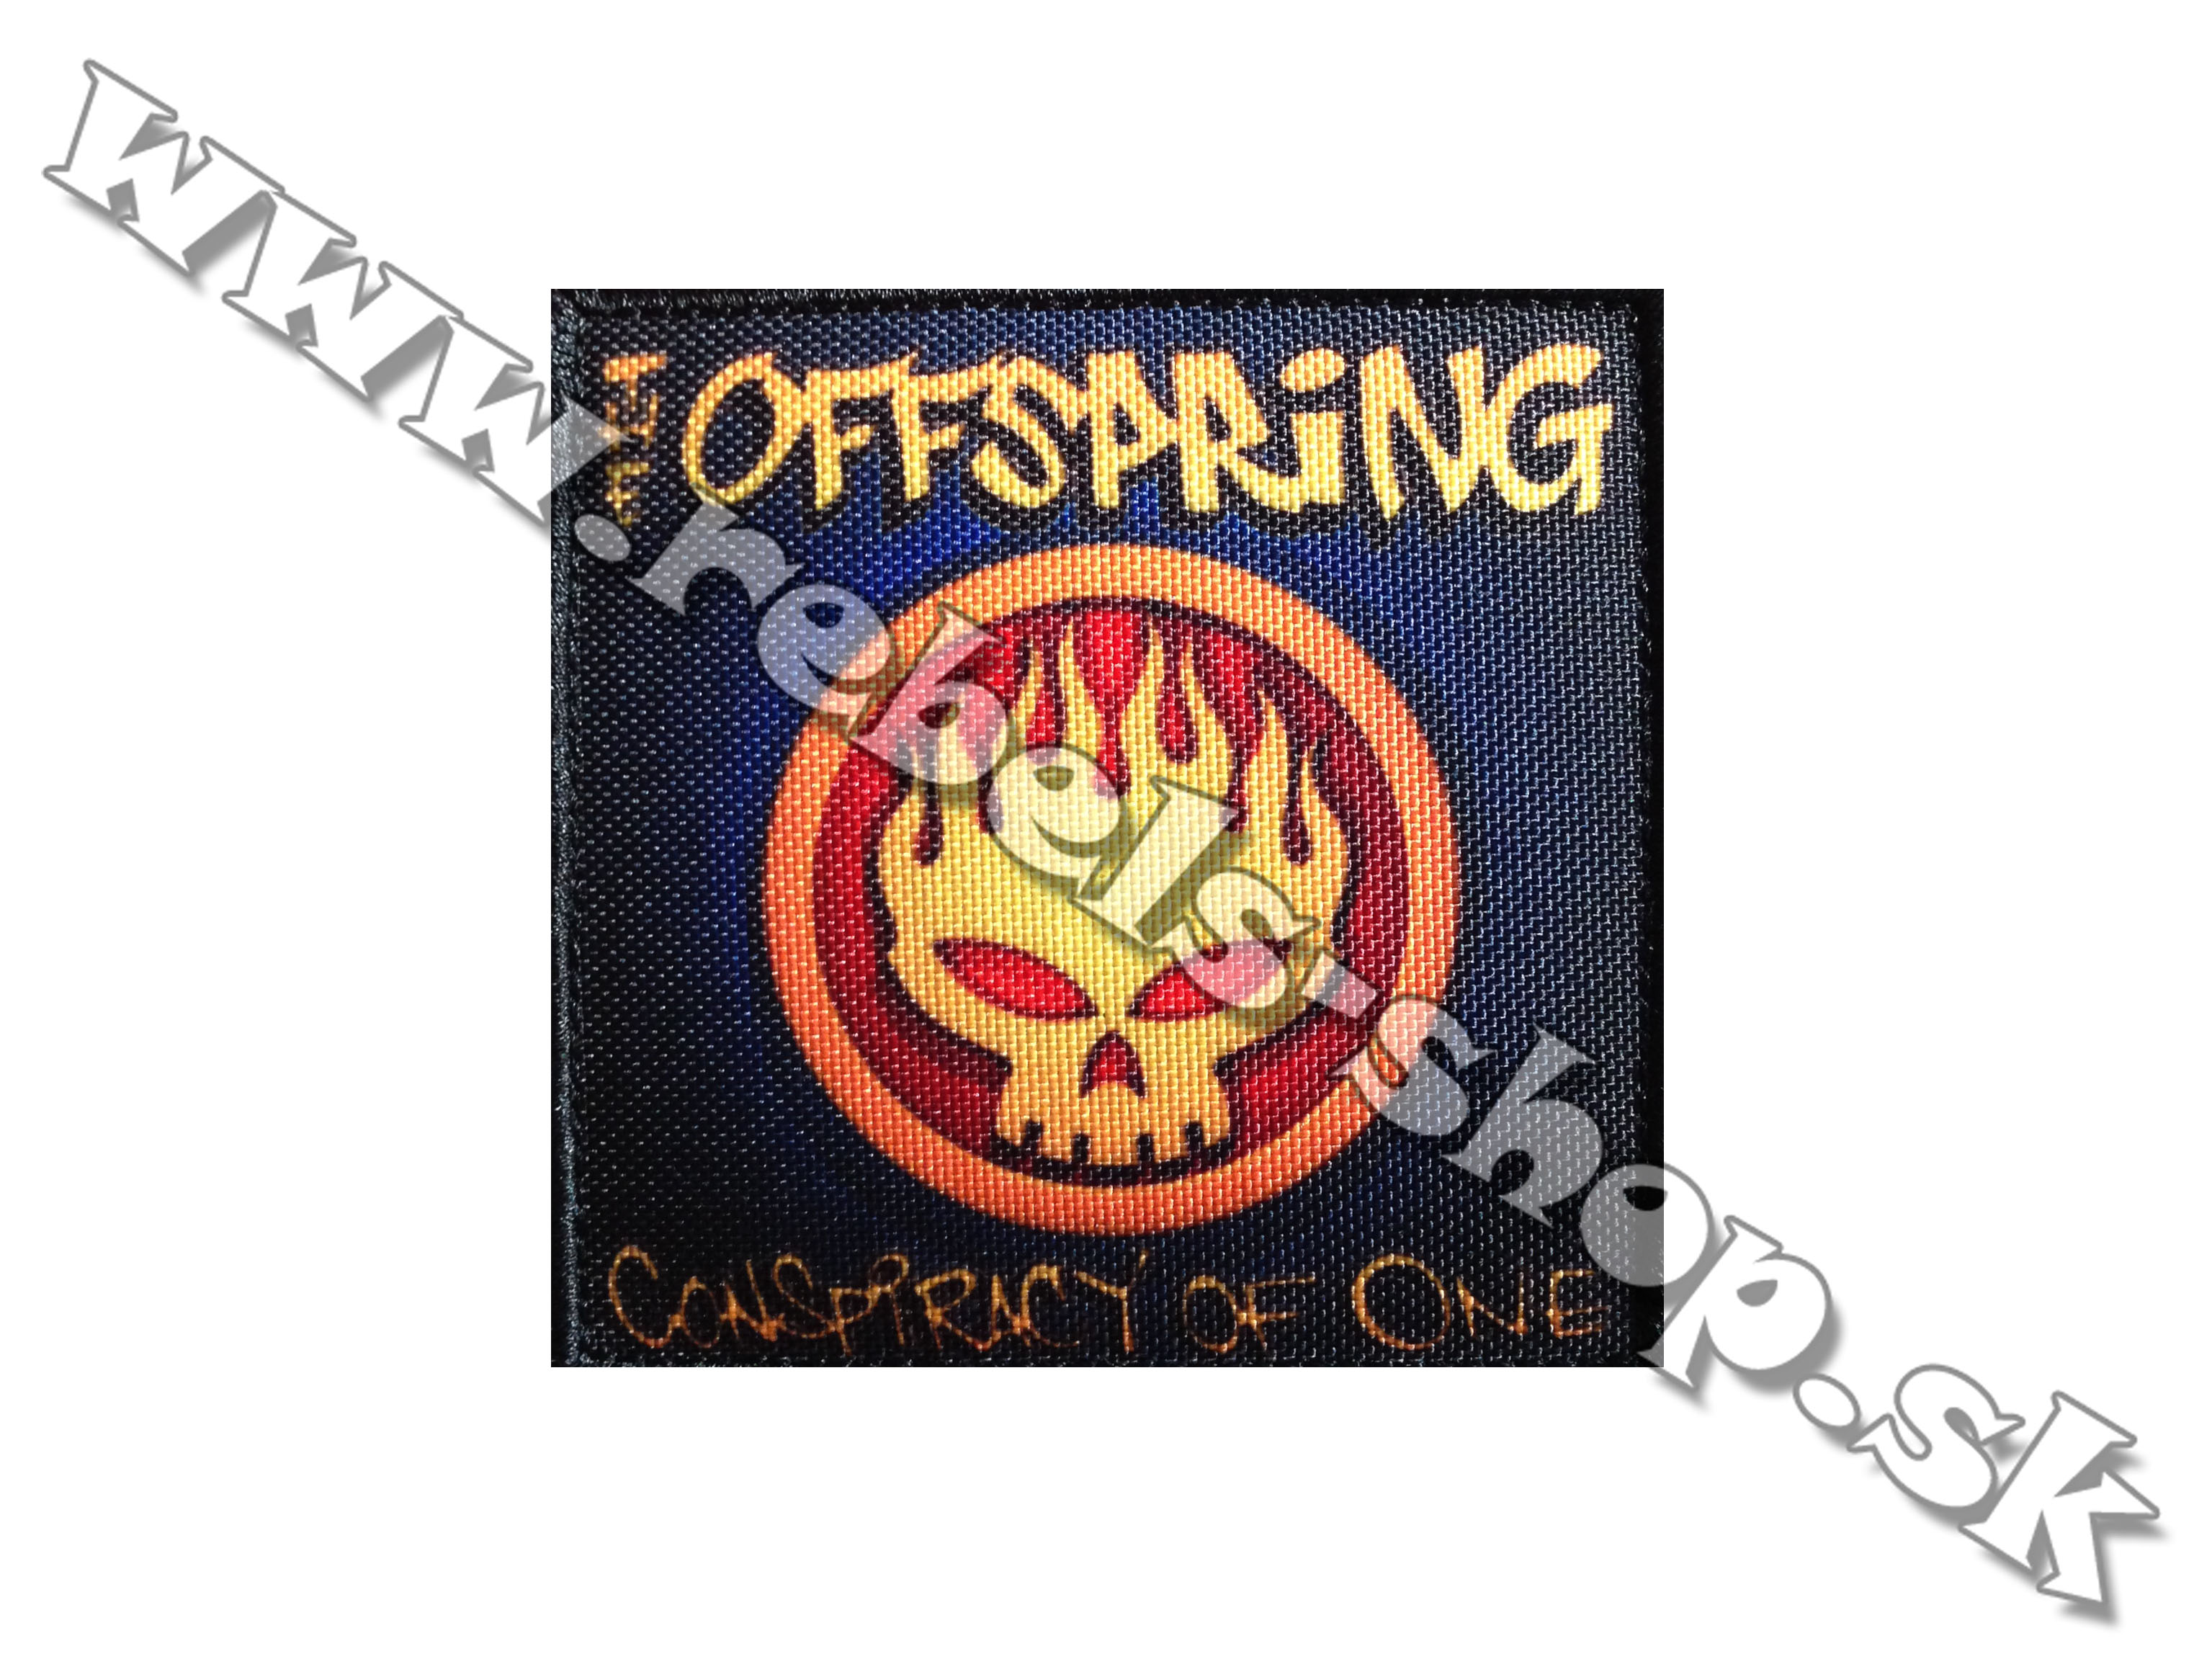 Nášivka "The Offspring"